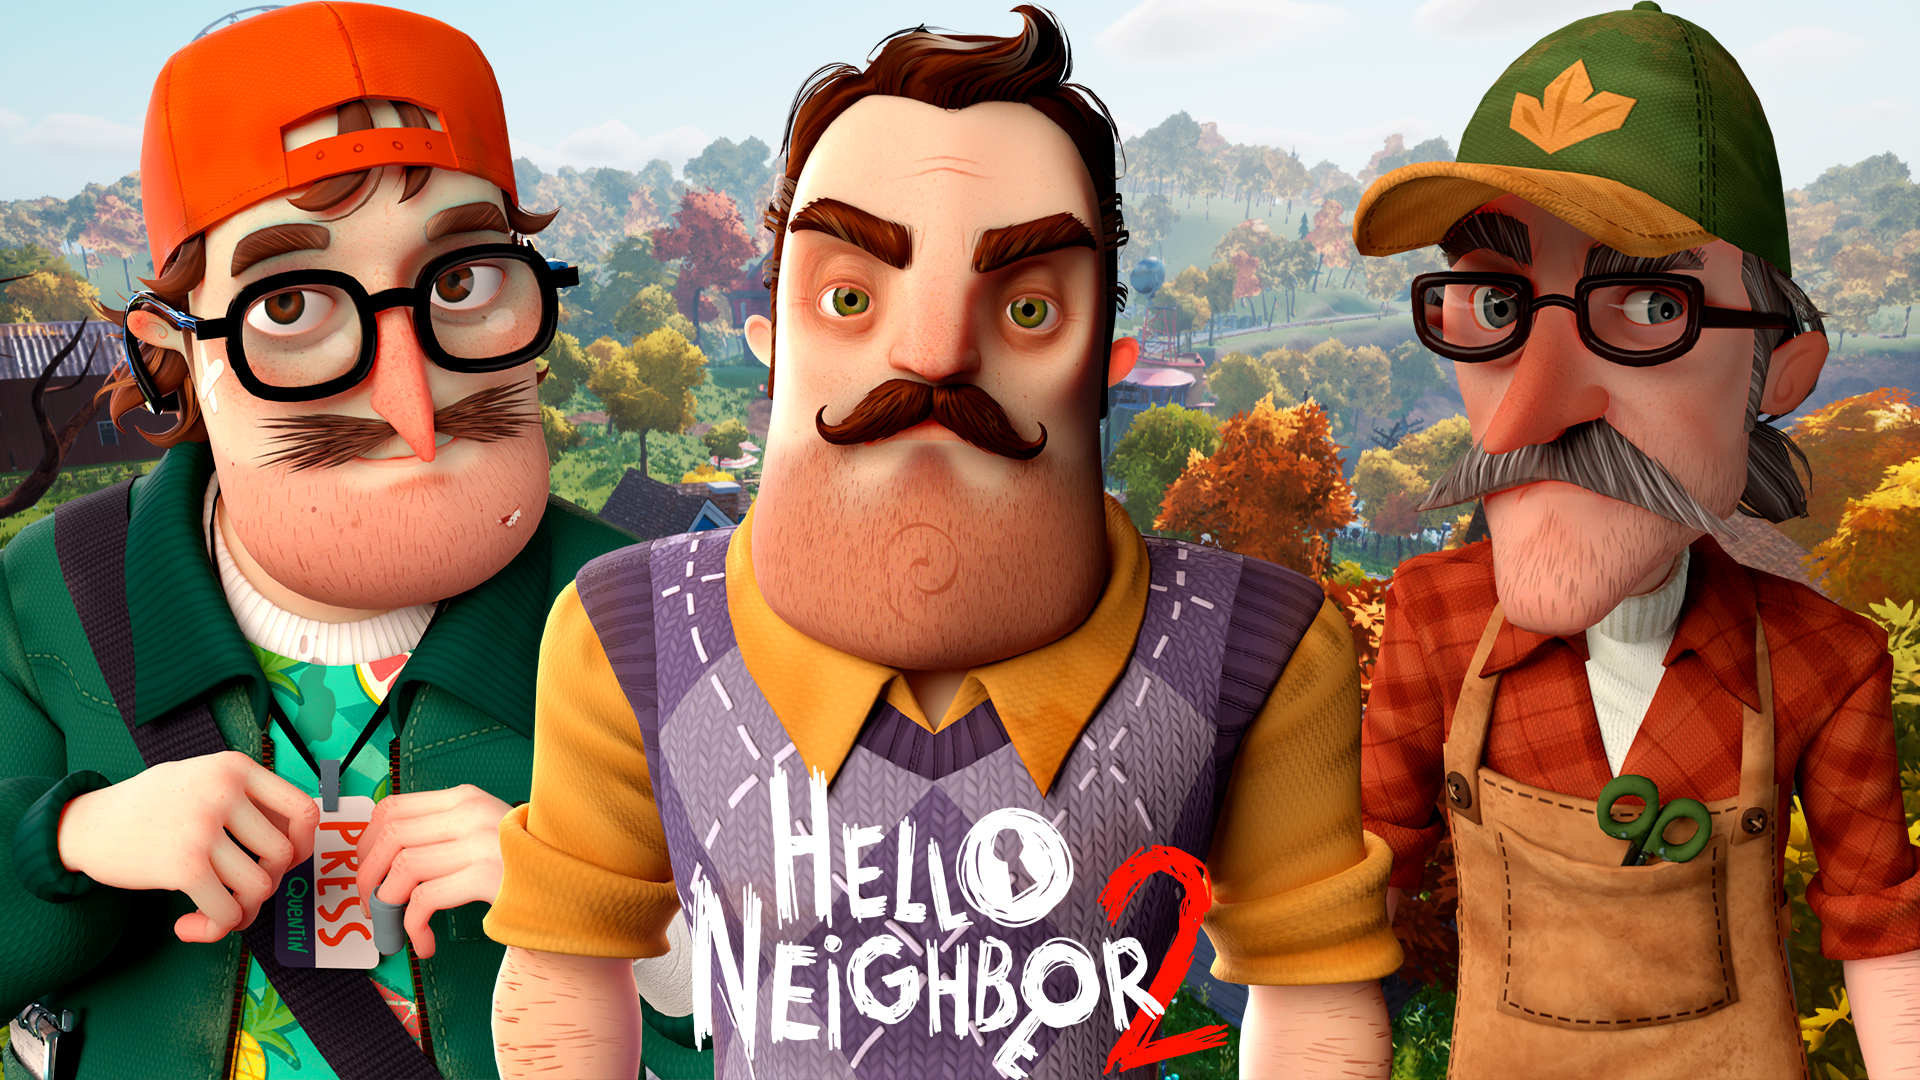 Привет сосед версия 2 игра. Hello Neighbor 2 сосед. Привет сосед 2 бета. Привет сосед 2 охотник. Привет сосед Beta 3.